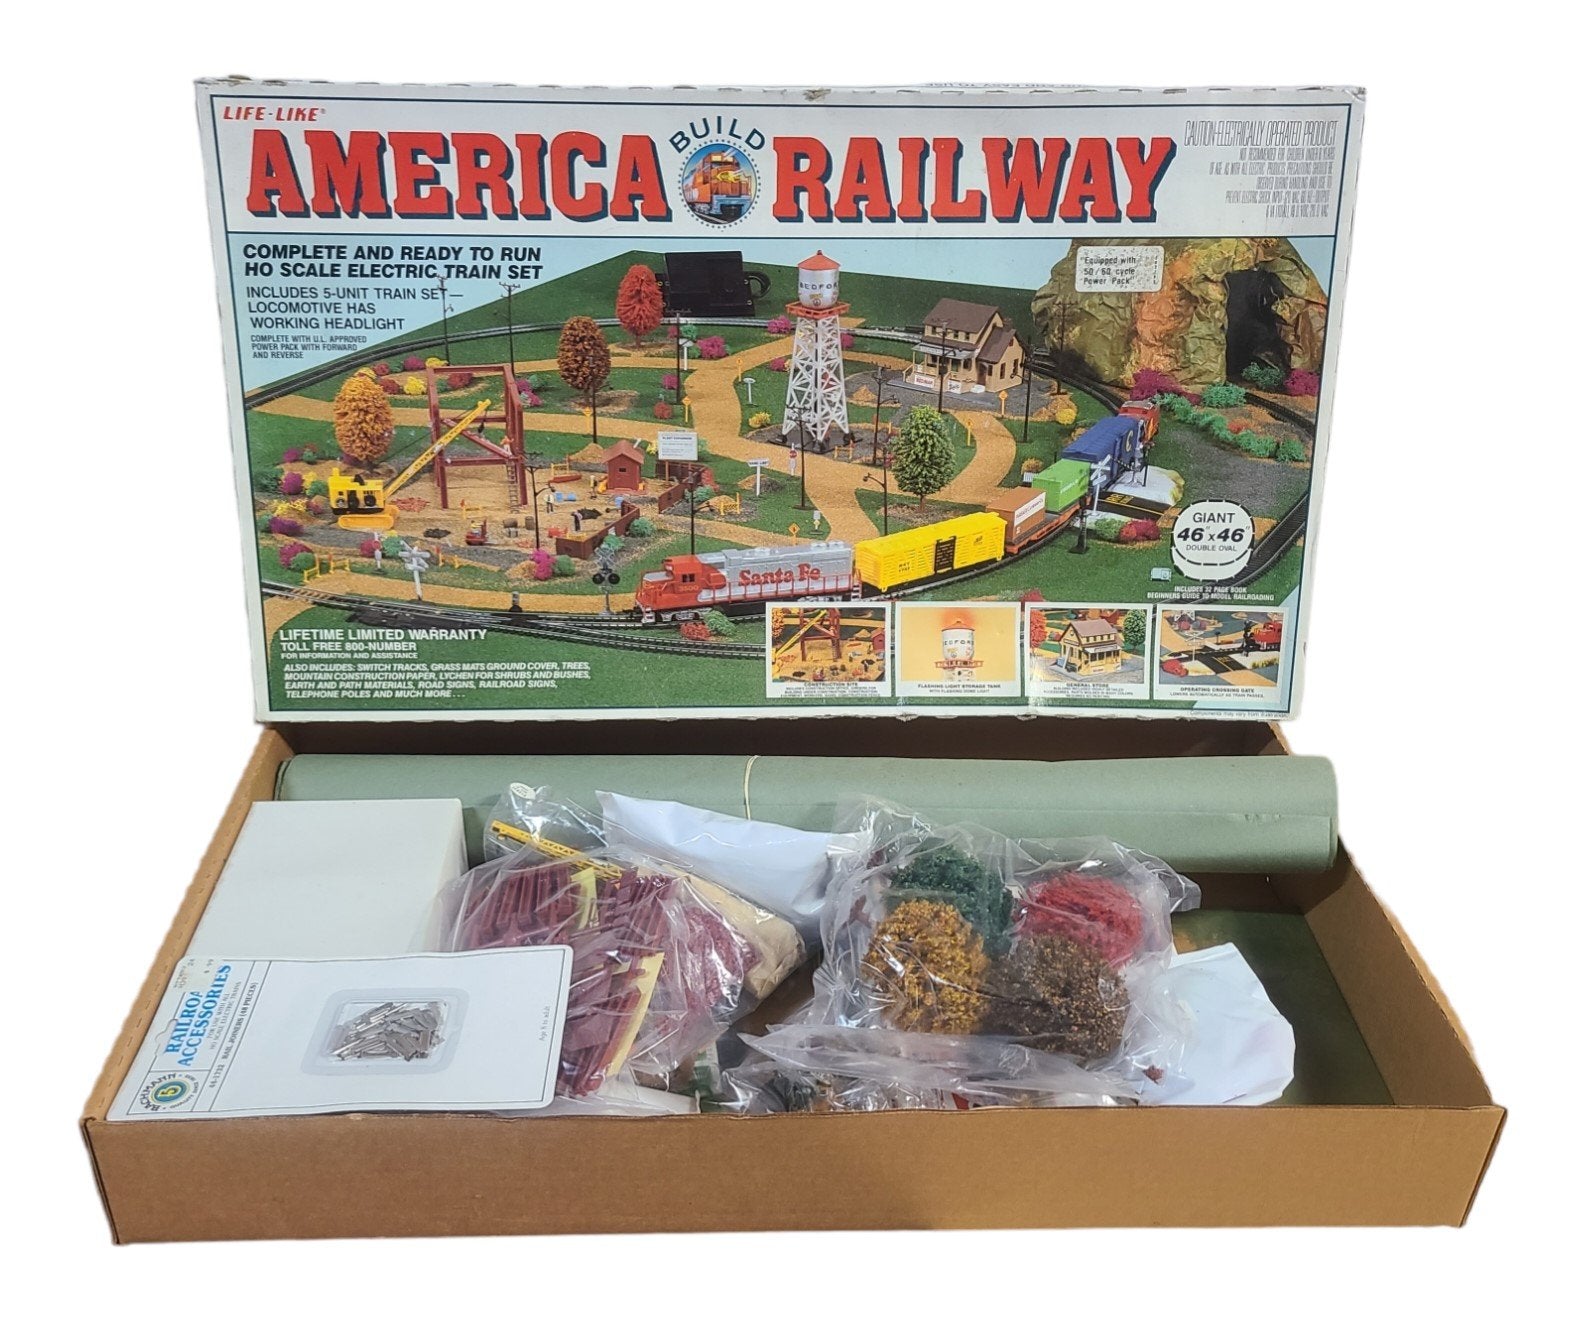 Vintage America Railway Build Kit 1980s Life-Like Railroad New Unused Full Set